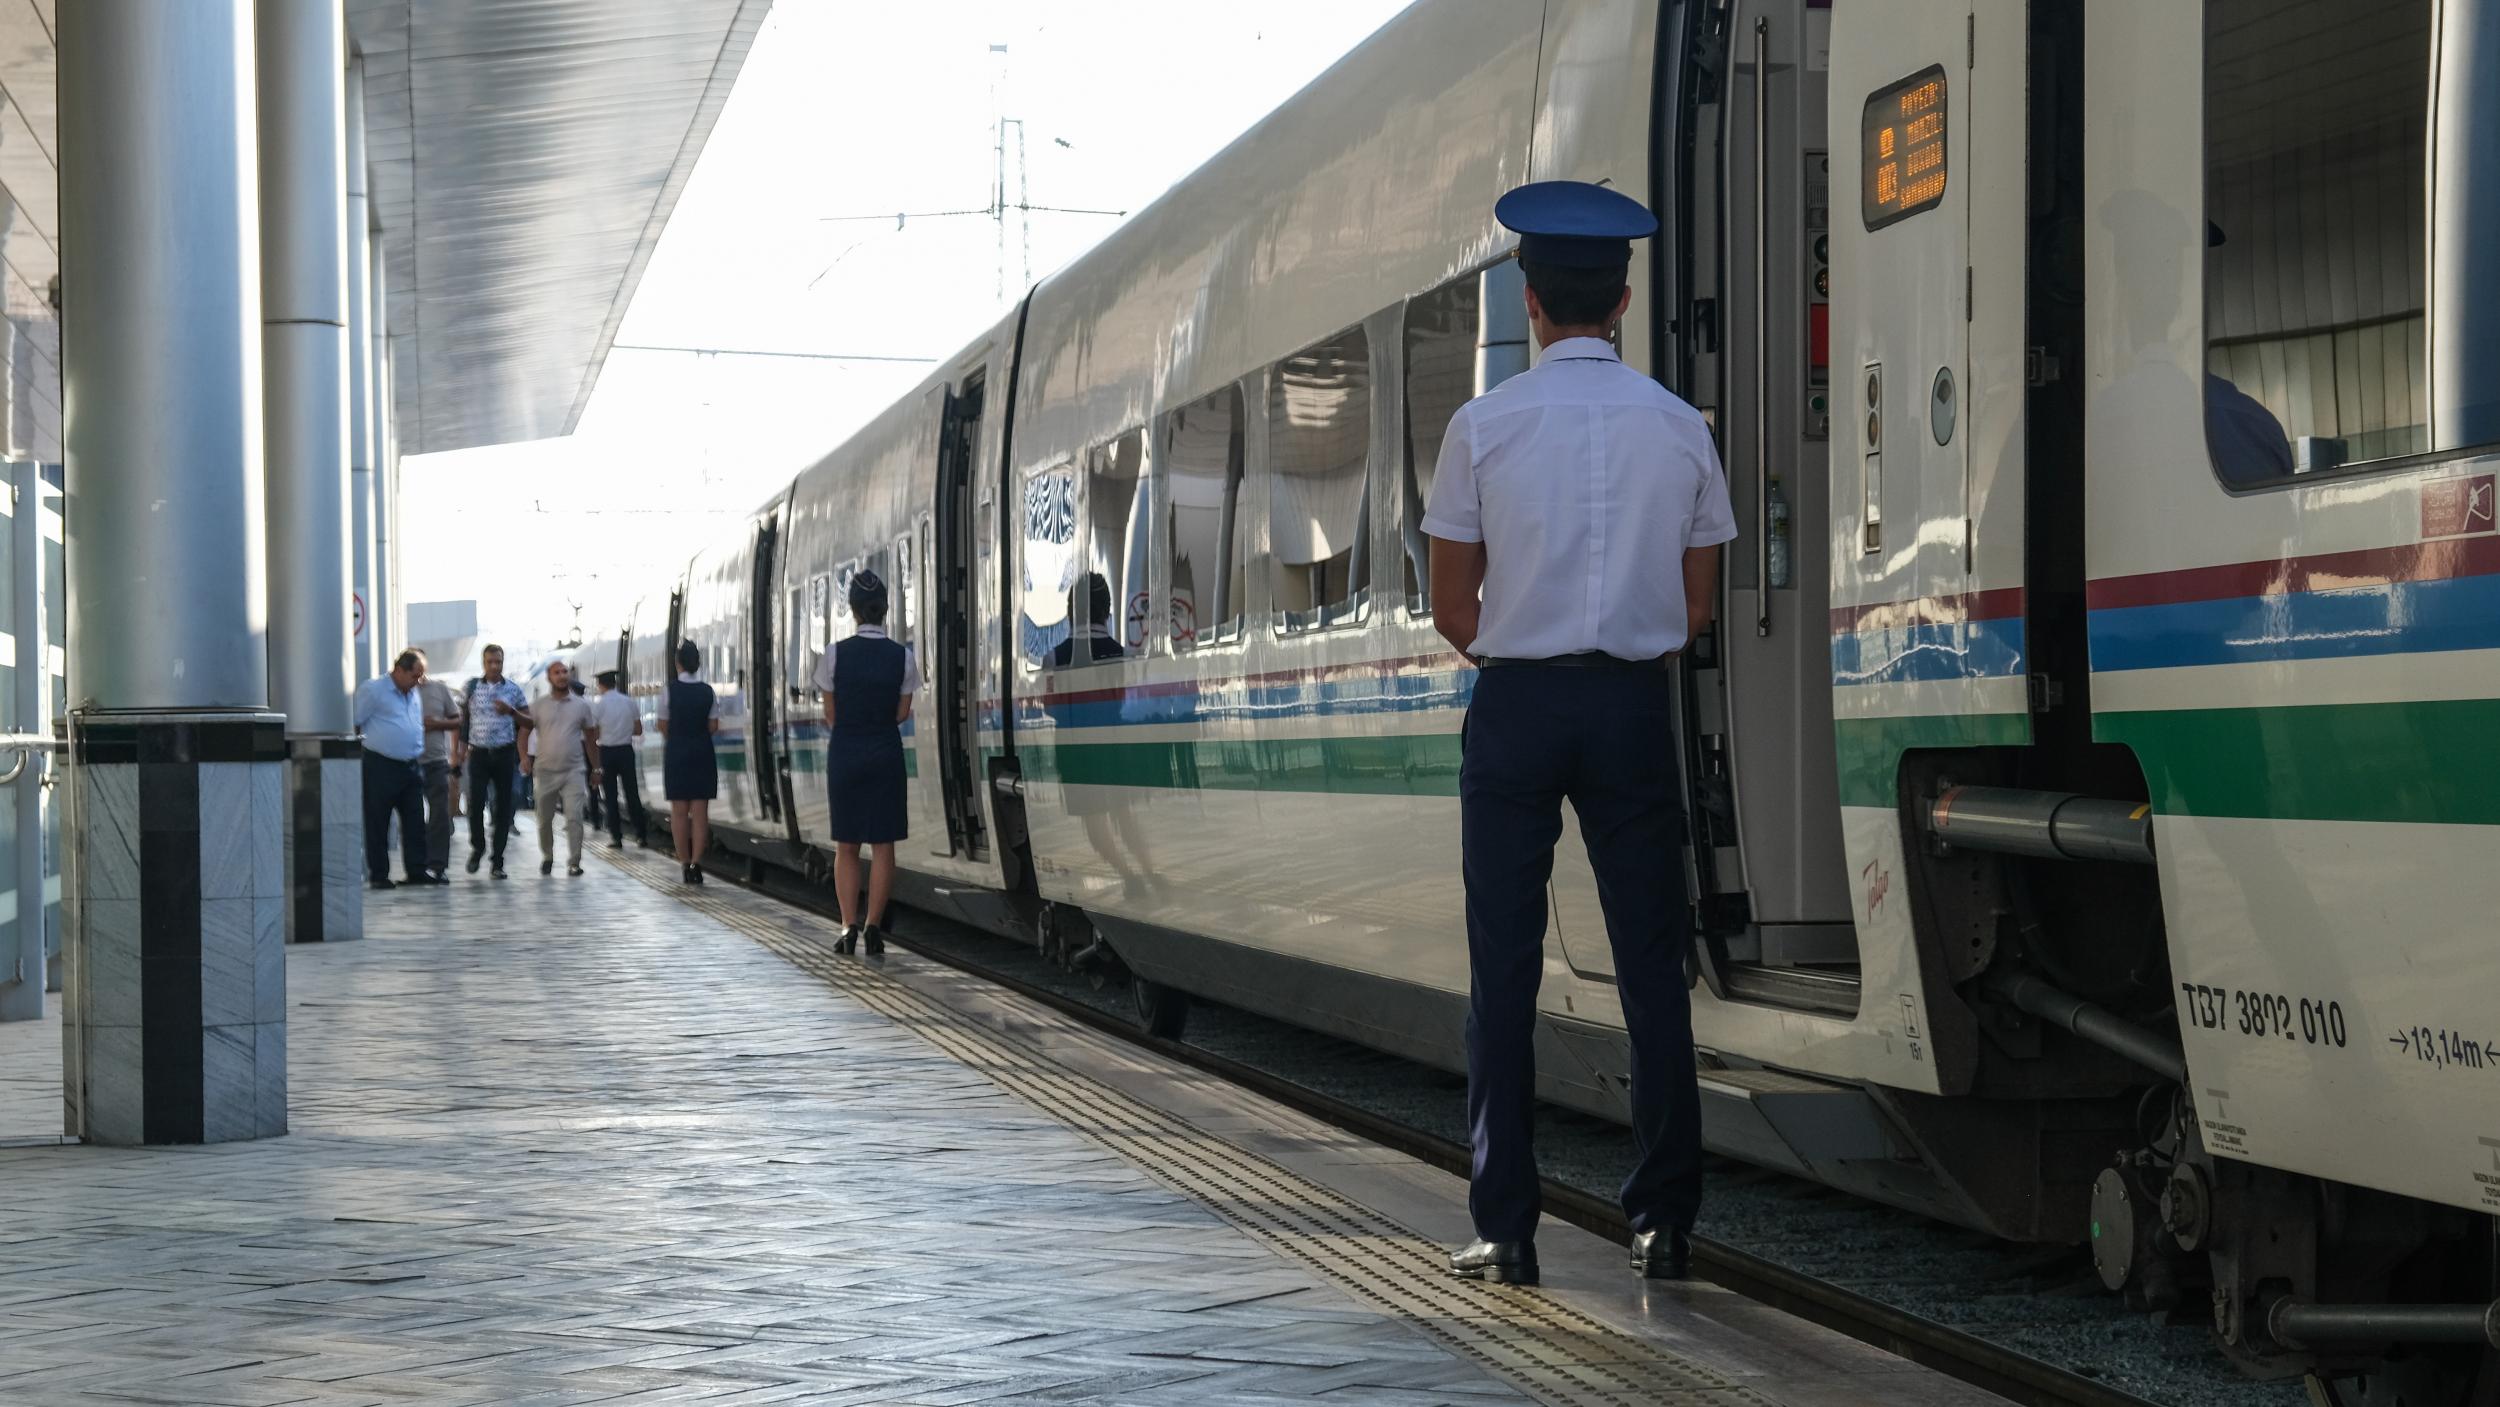 Uzbekistan's new bullet trains